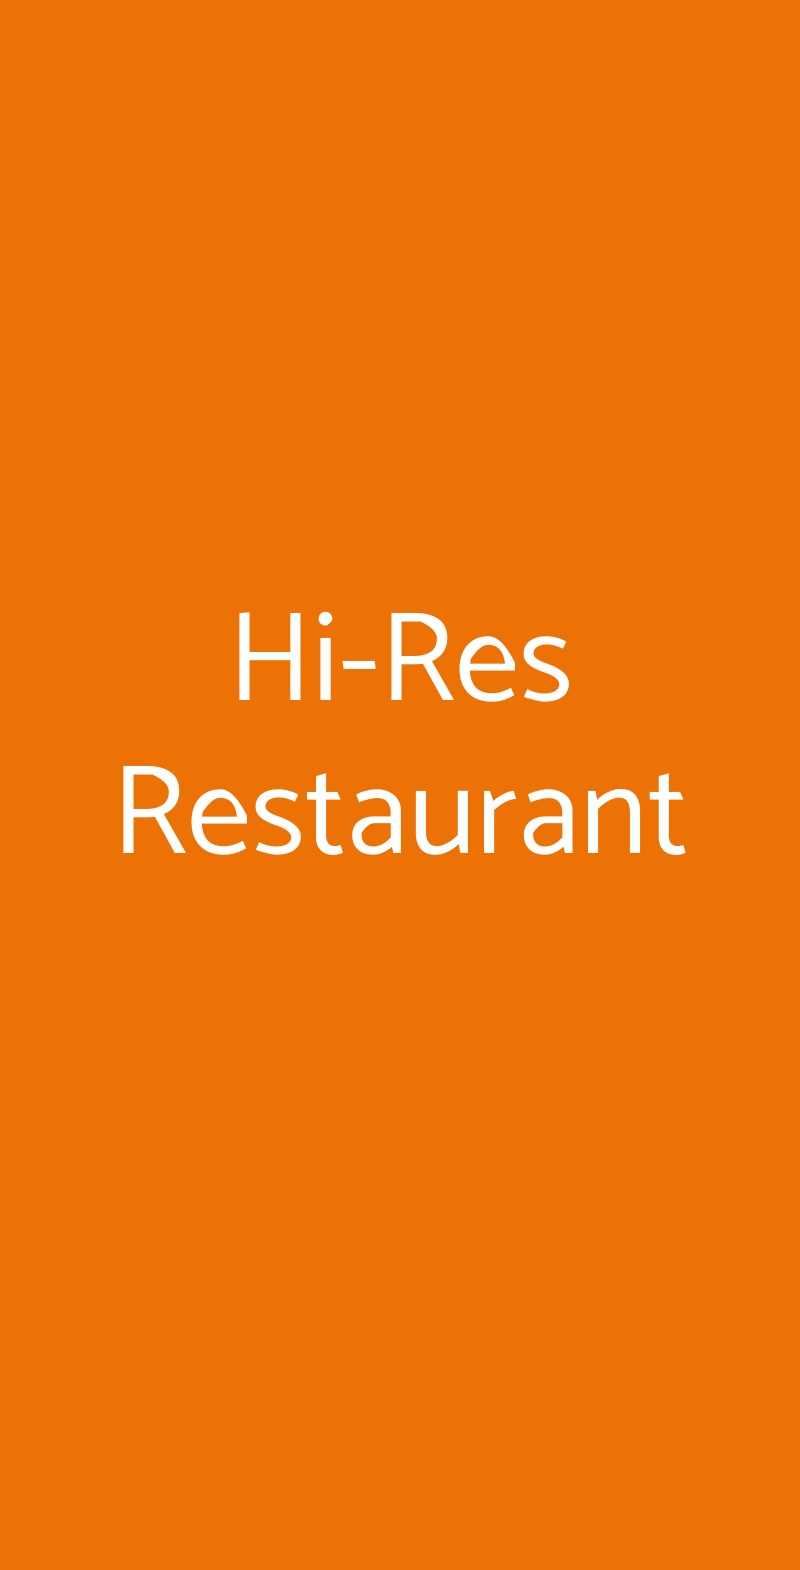 Hi-Res Restaurant Roma menù 1 pagina